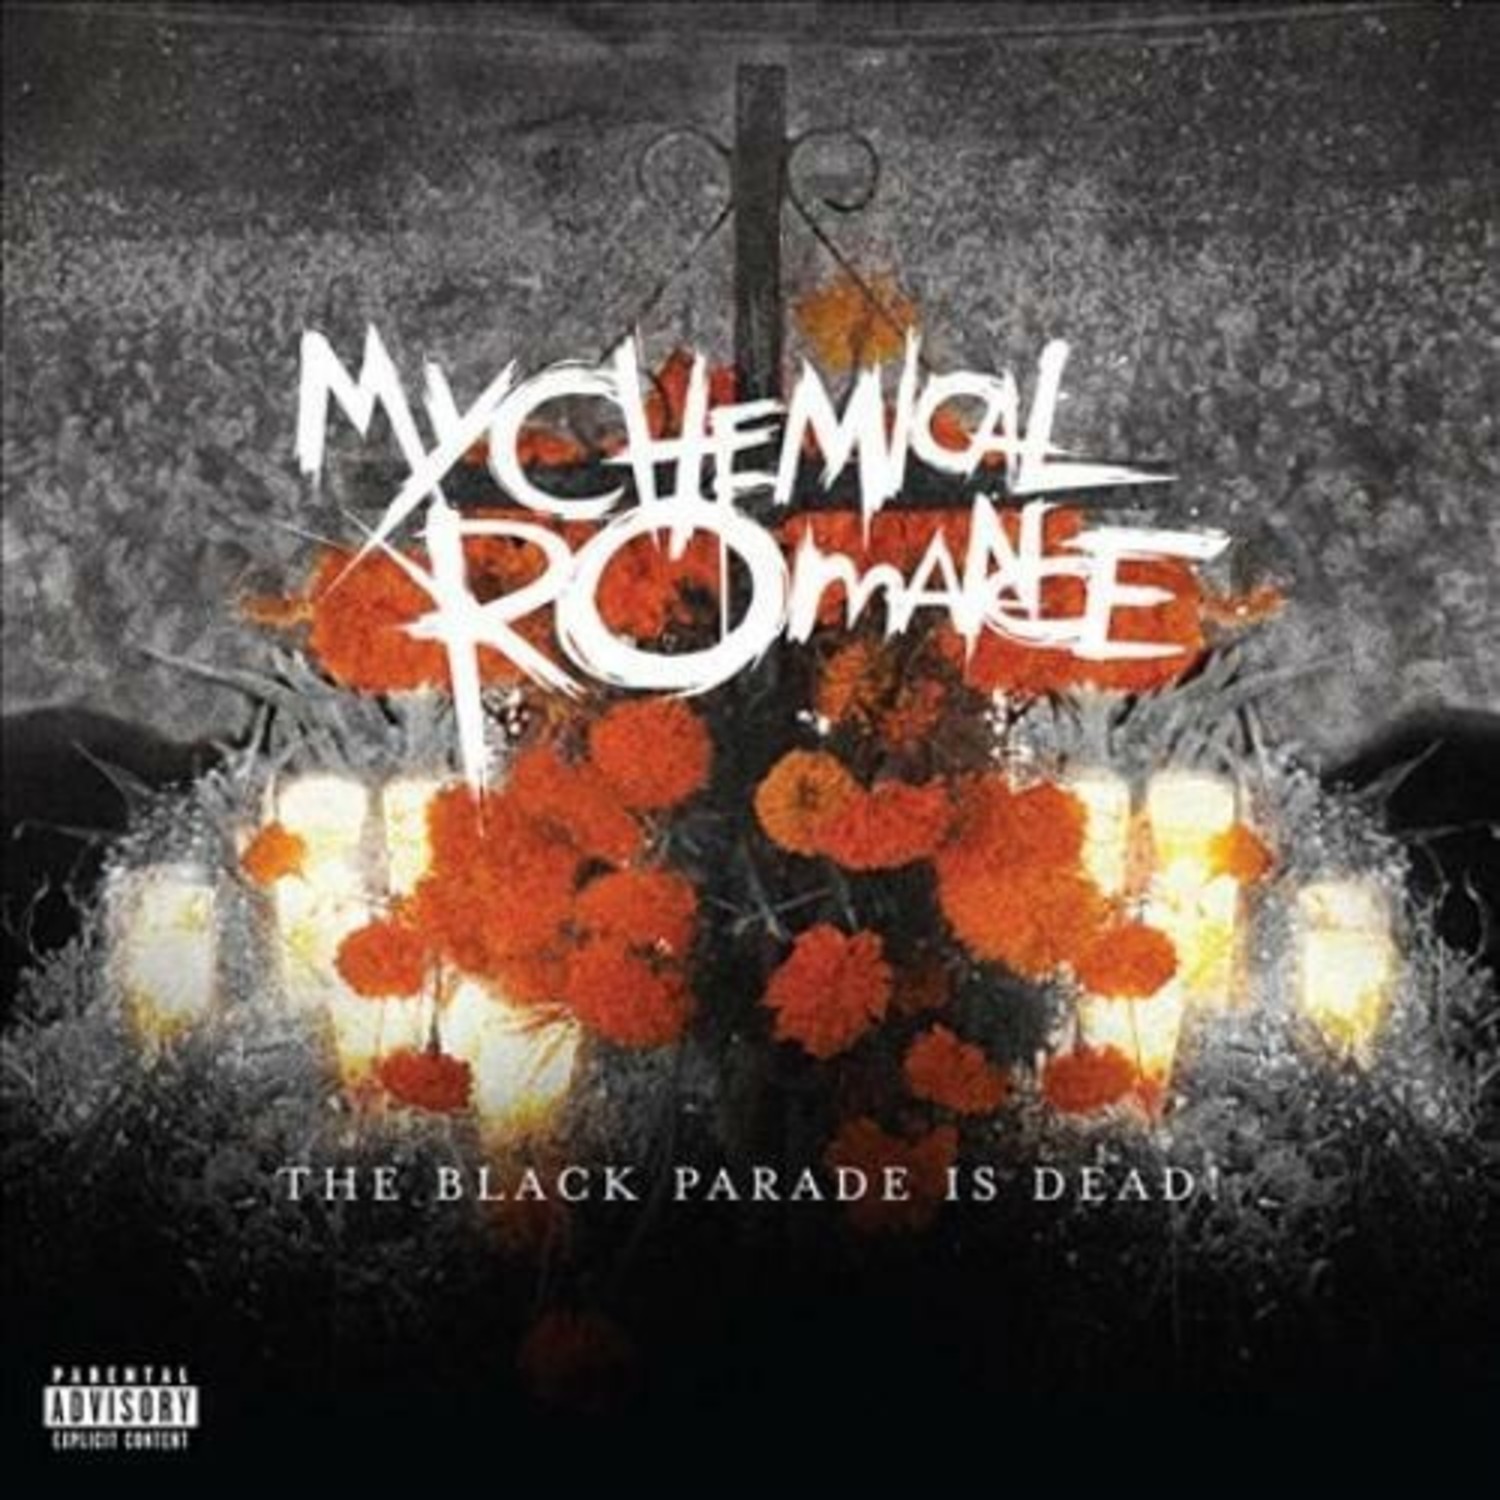 LISTEN: My Chemical Romance fans split over EDM remix of ' Black Parade